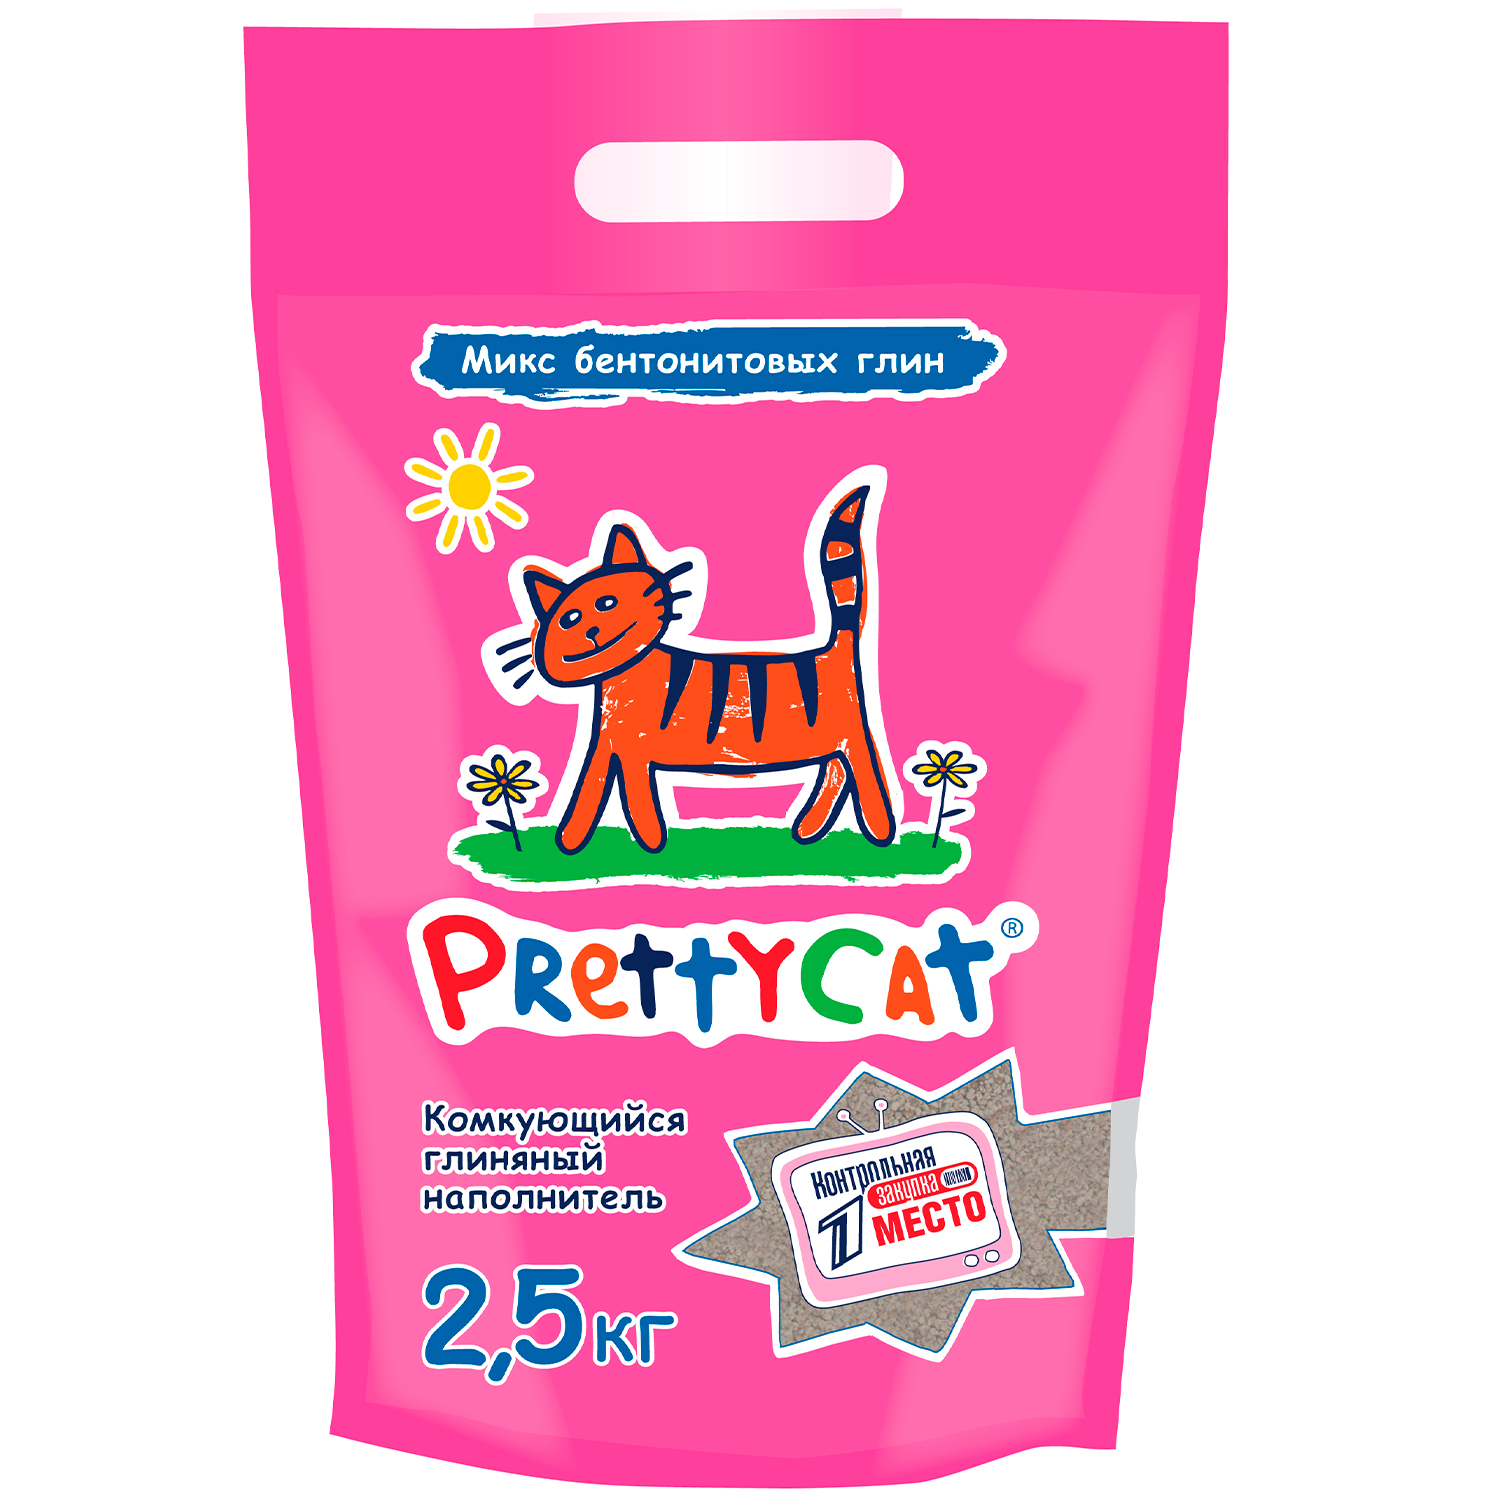 PrettyCat наполнитель комкующийся для кошачьих туалетов 